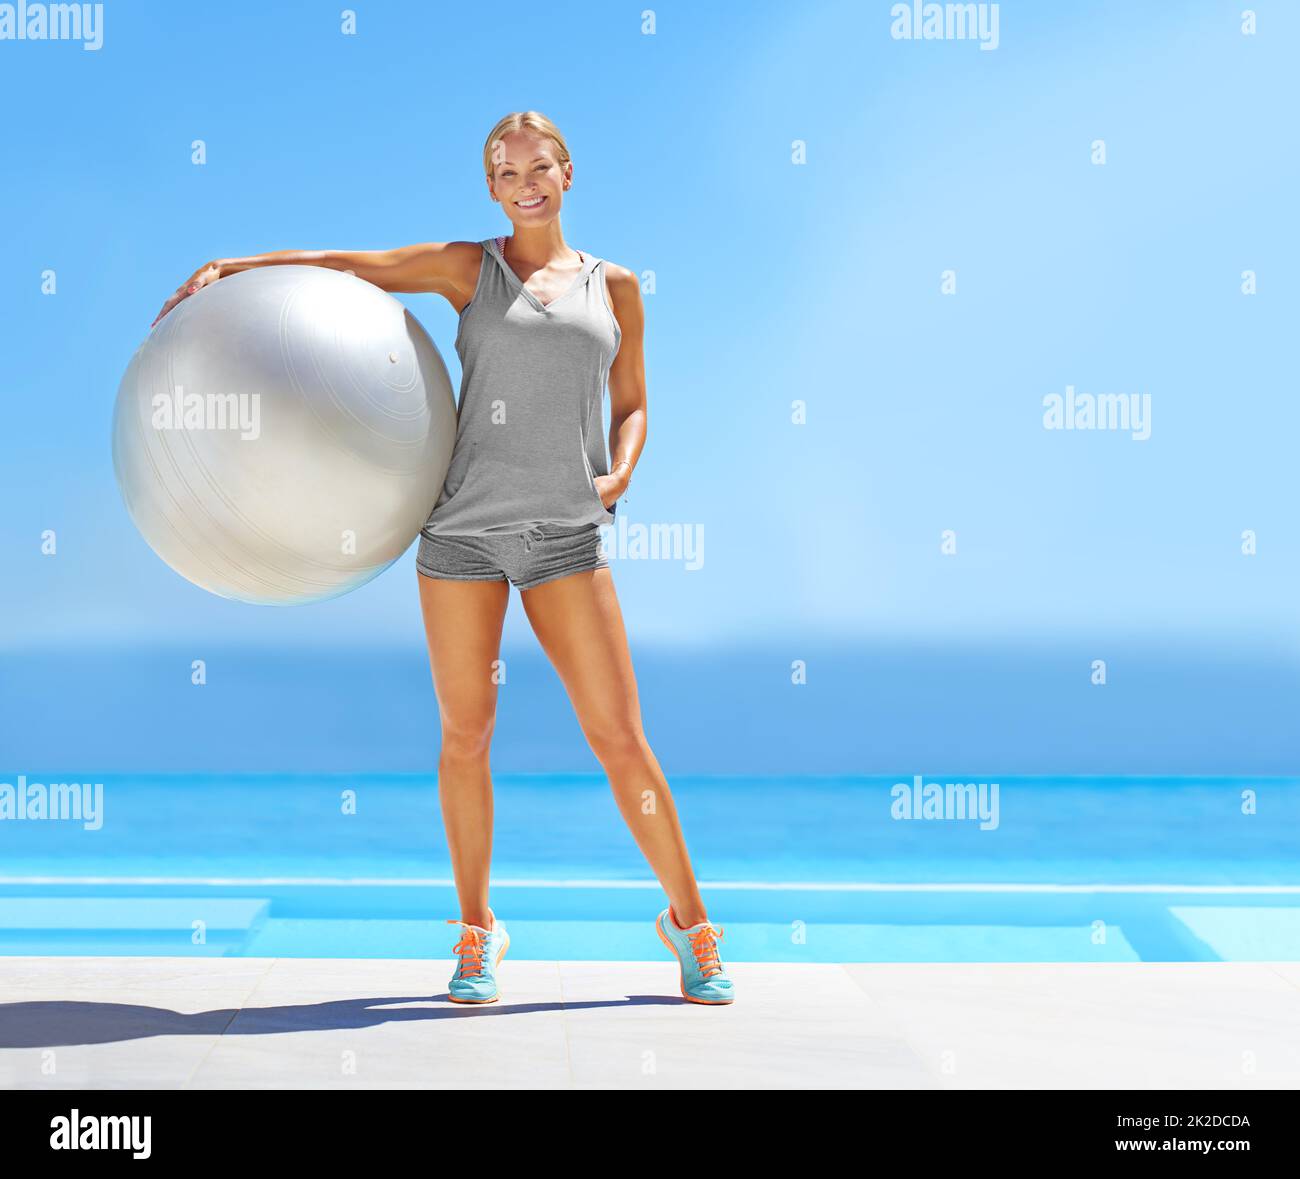 Bereit für dein Workout. Porträt einer schönen jungen Frau, die an einem Pool steht und einen Übungsball hält. Stockfoto